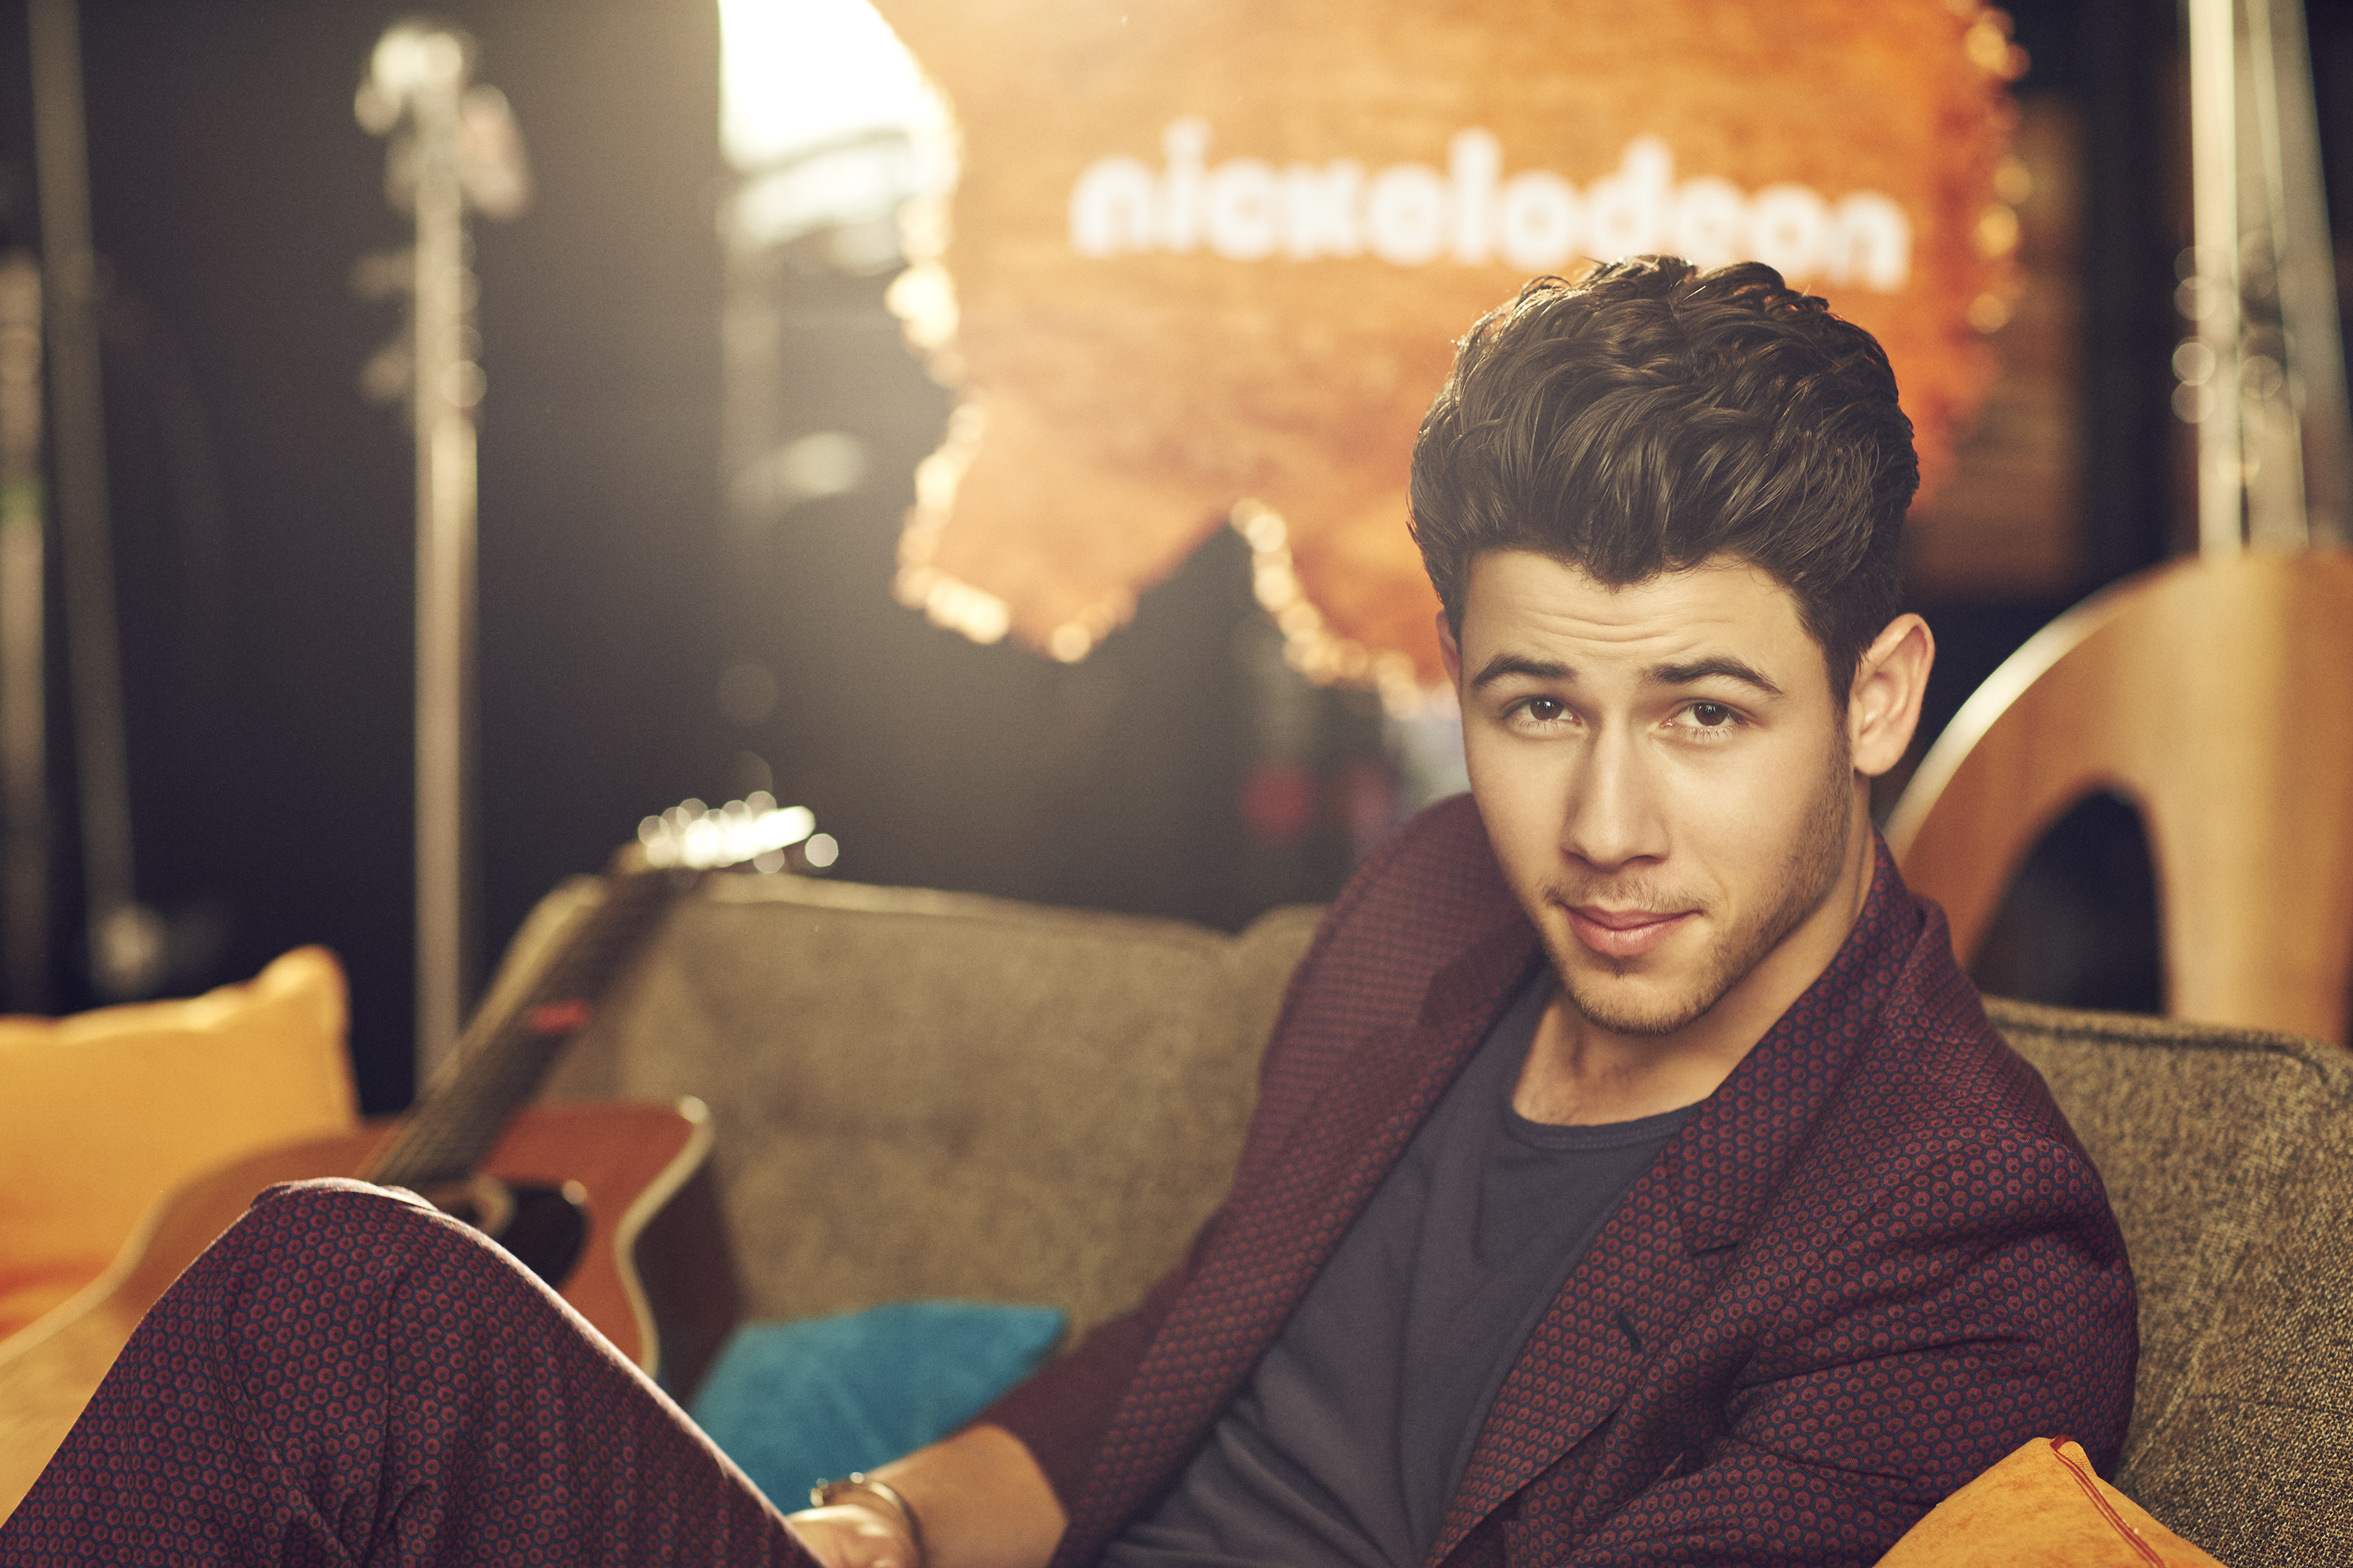 Melhores papéis de parede de Nick Jonas para tela do telefone